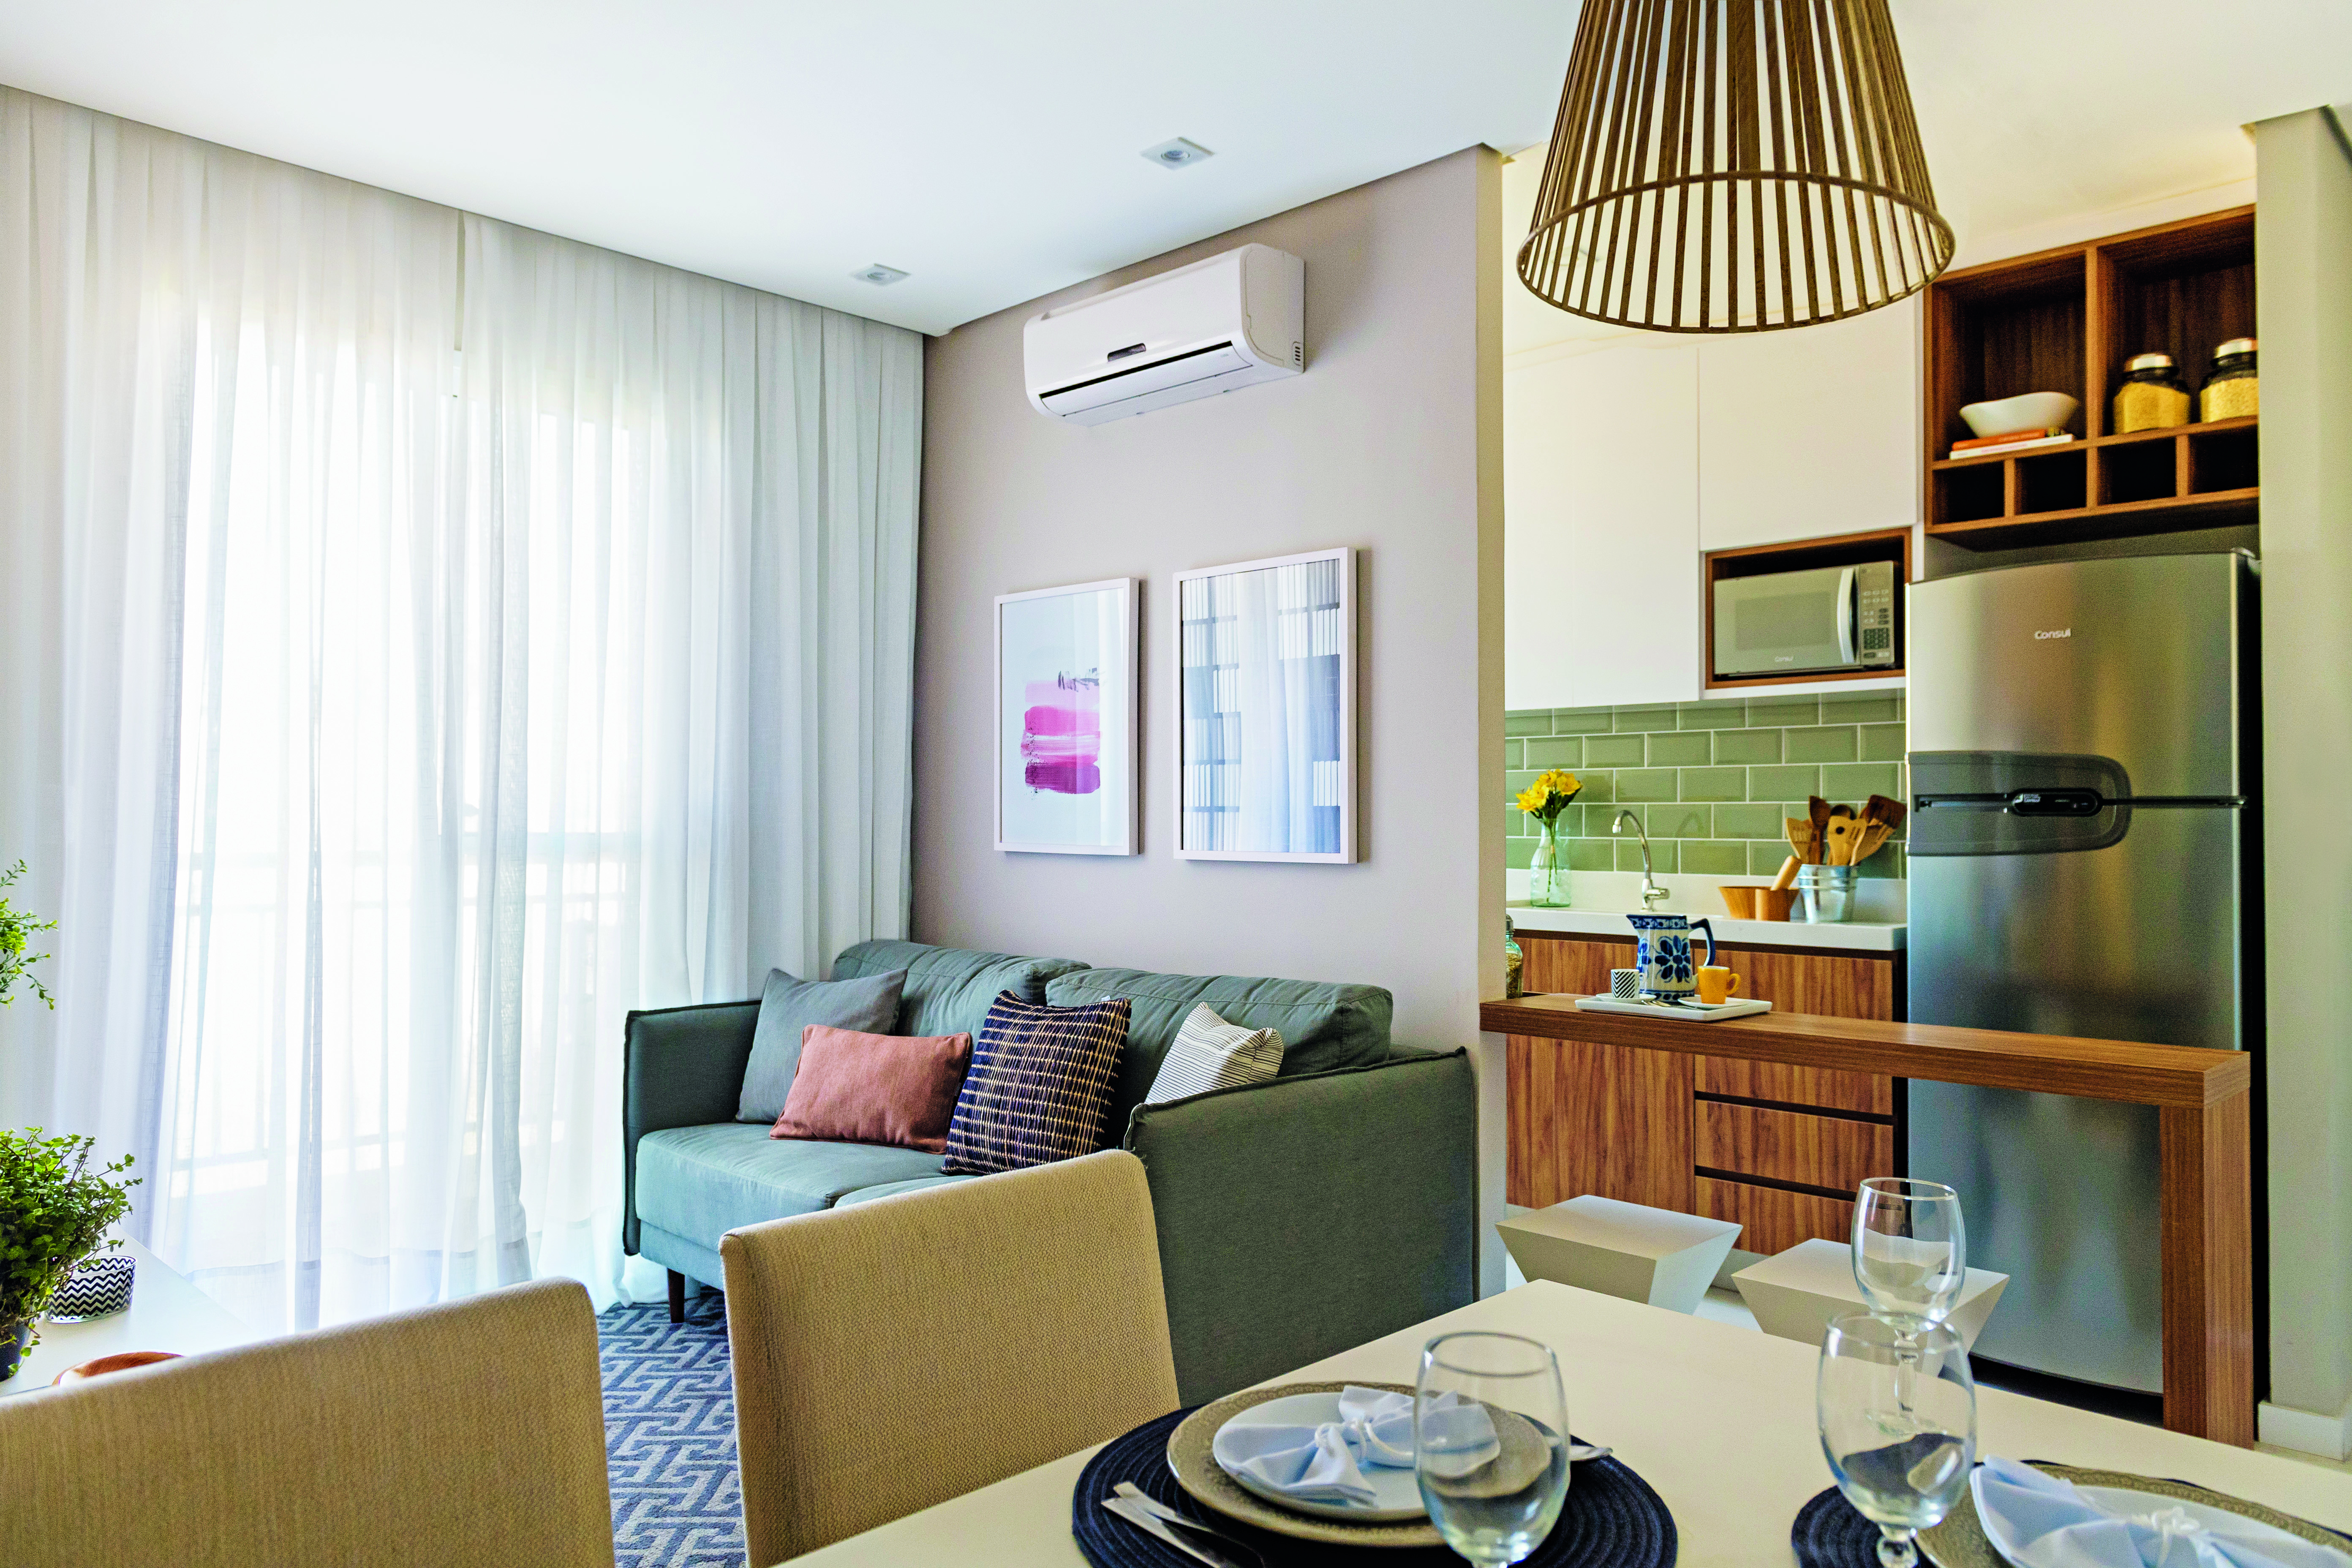  Liten lägenhet: 45 m² inredd med charm och stil